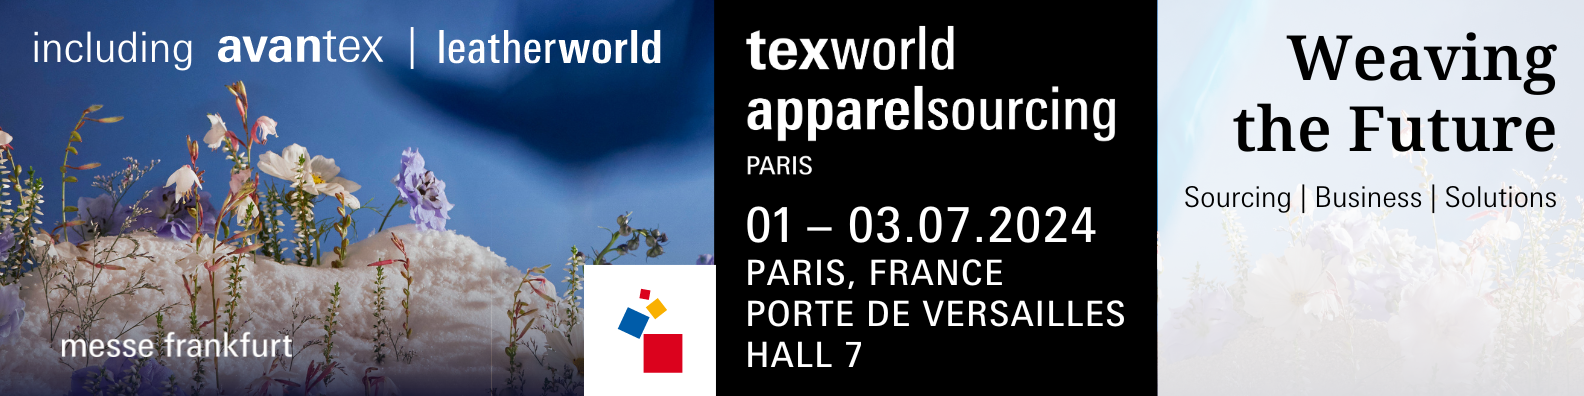 Texworld Apparel Sourcing Paris